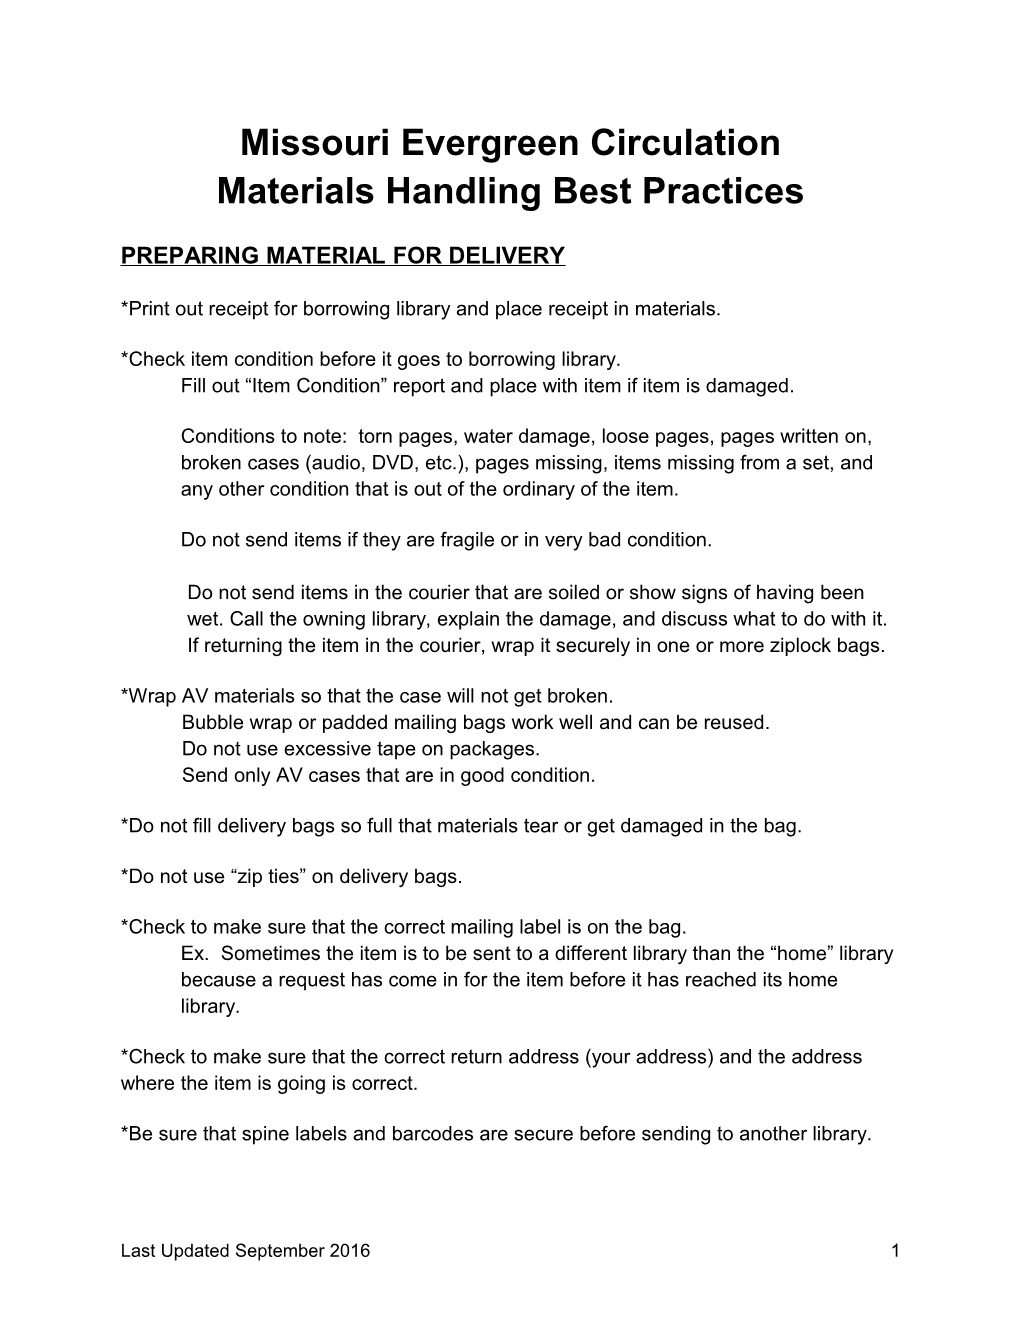 Materials Handling Best Practices